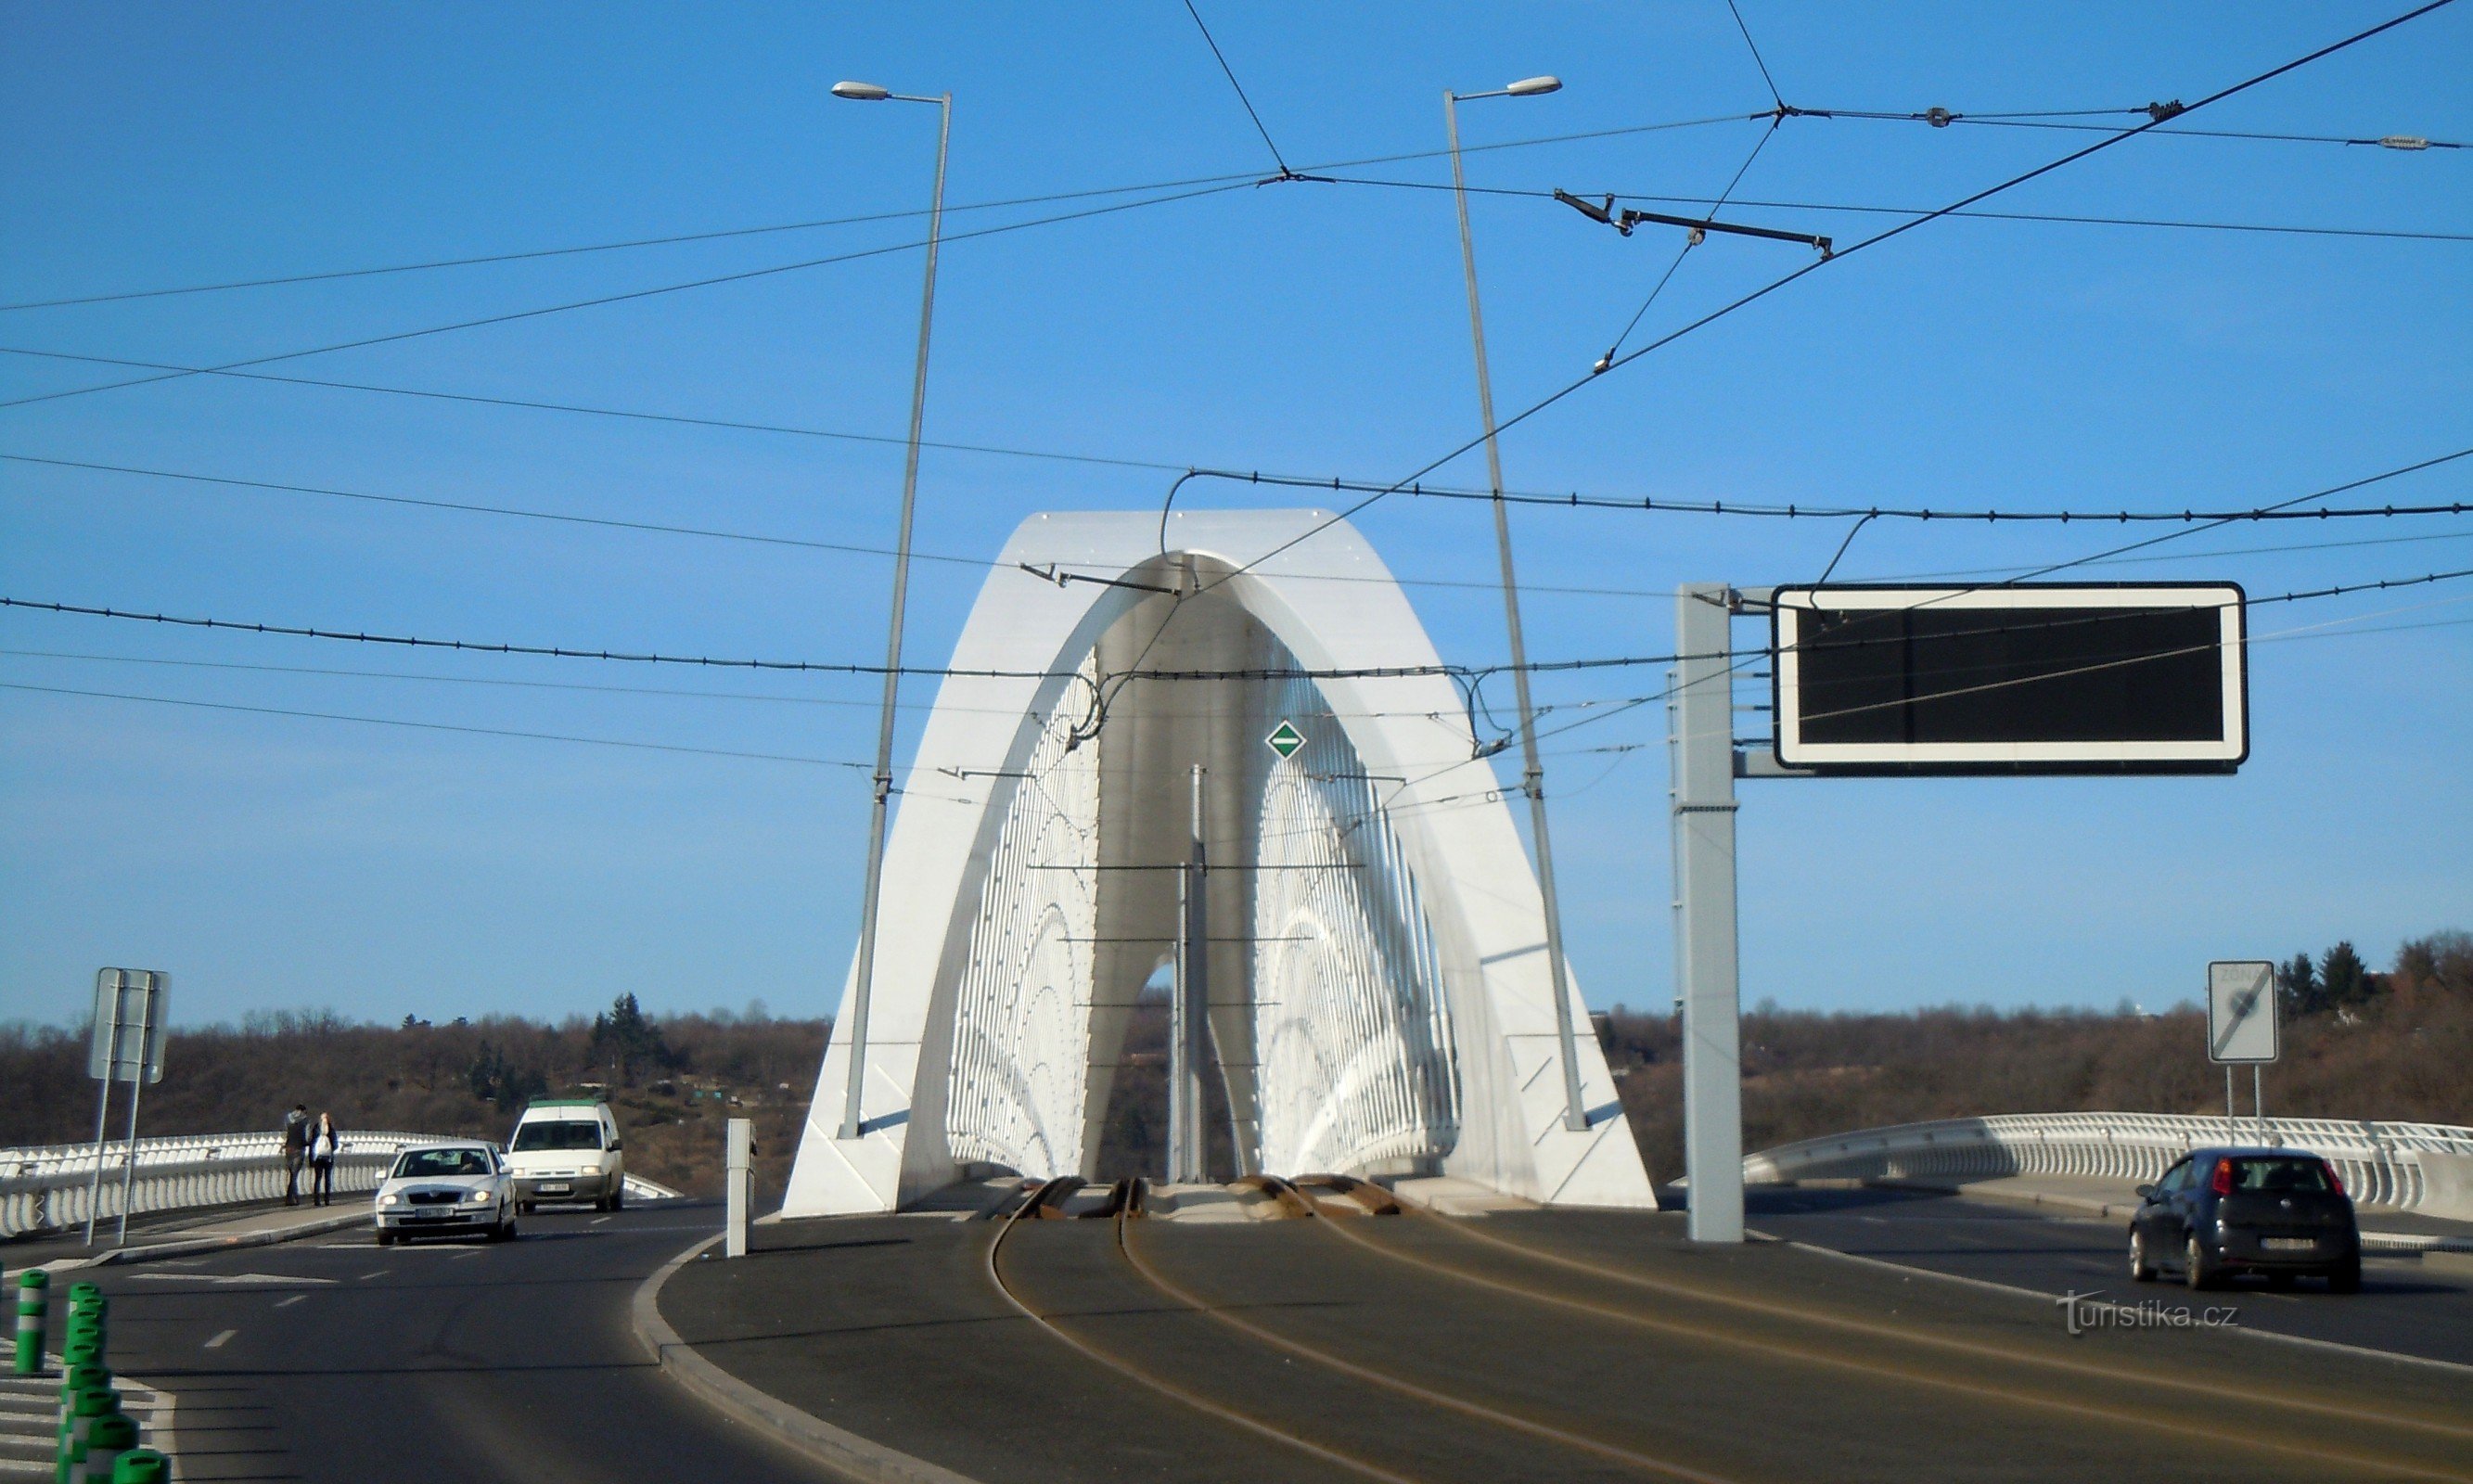 Trojský most внутрішній кузов трамвая